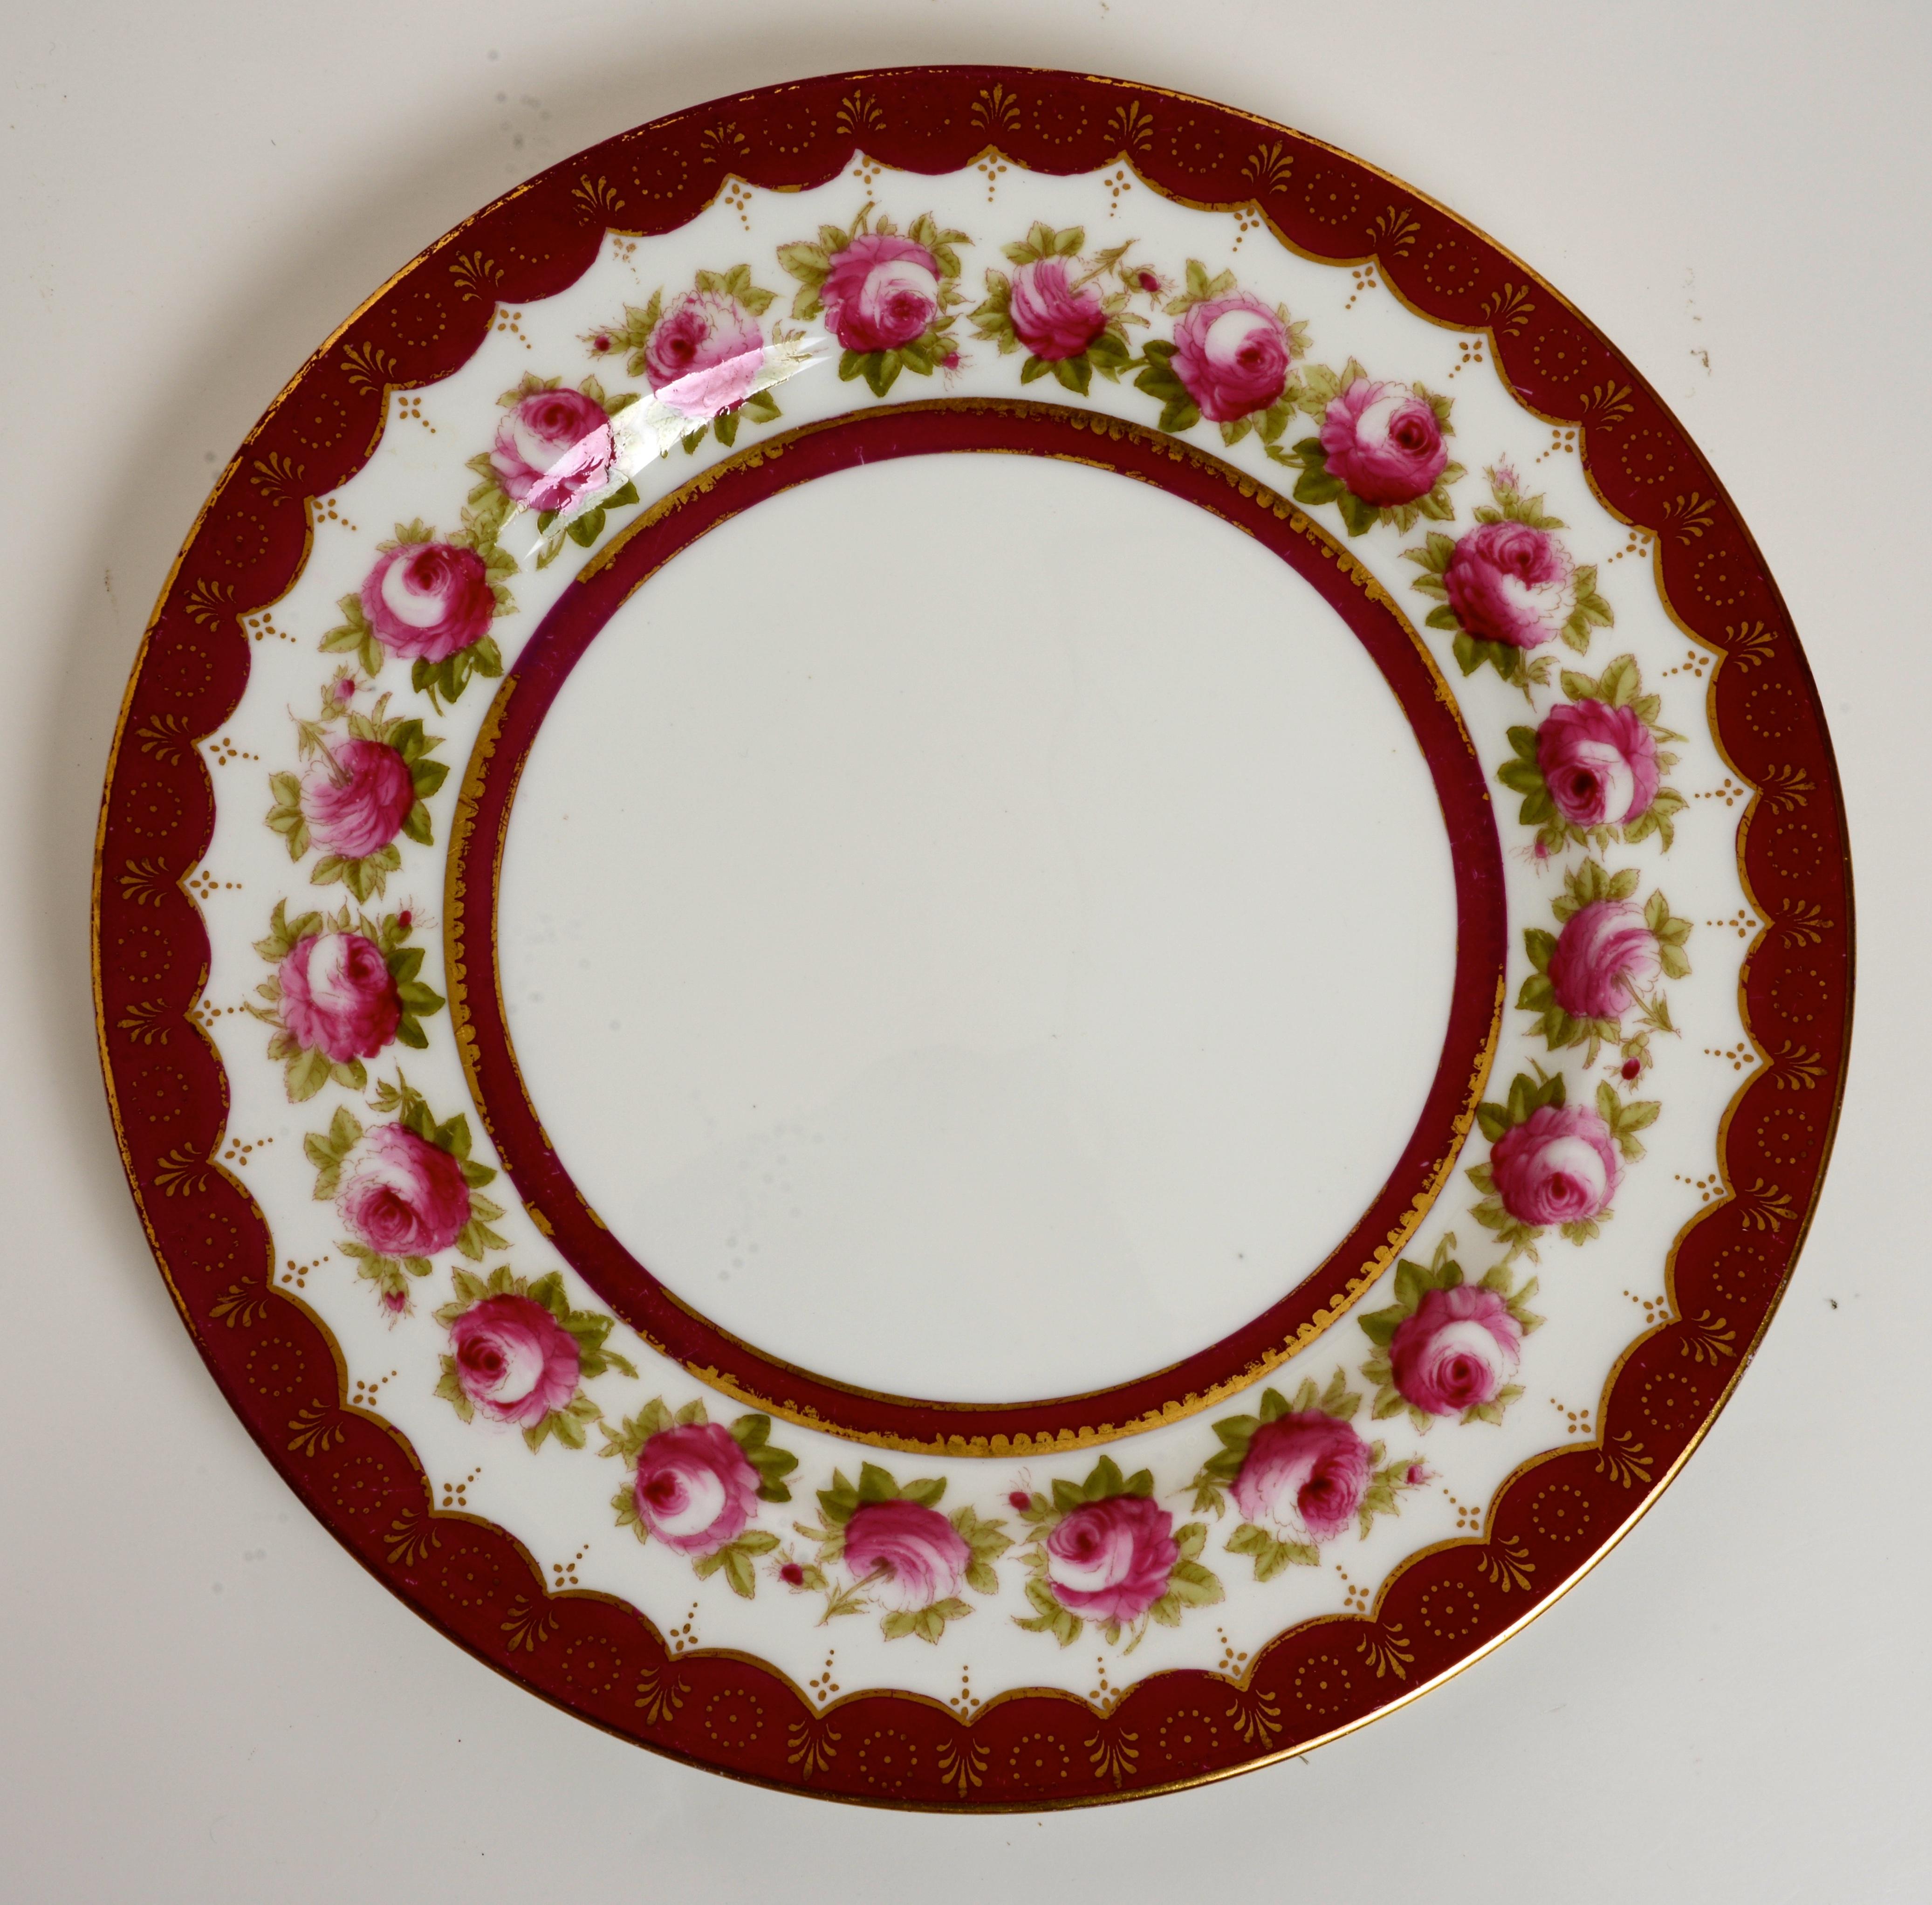 Lot de 14 assiettes à dîner de Royal Cauldon England dans un motif de roses. Motif : Z1302. Il s'agit d'un modèle discontinué. Ces assiettes en porcelaine ont une taille appropriée pour le plat principal de pâtes, la salade, l'apéritif, les